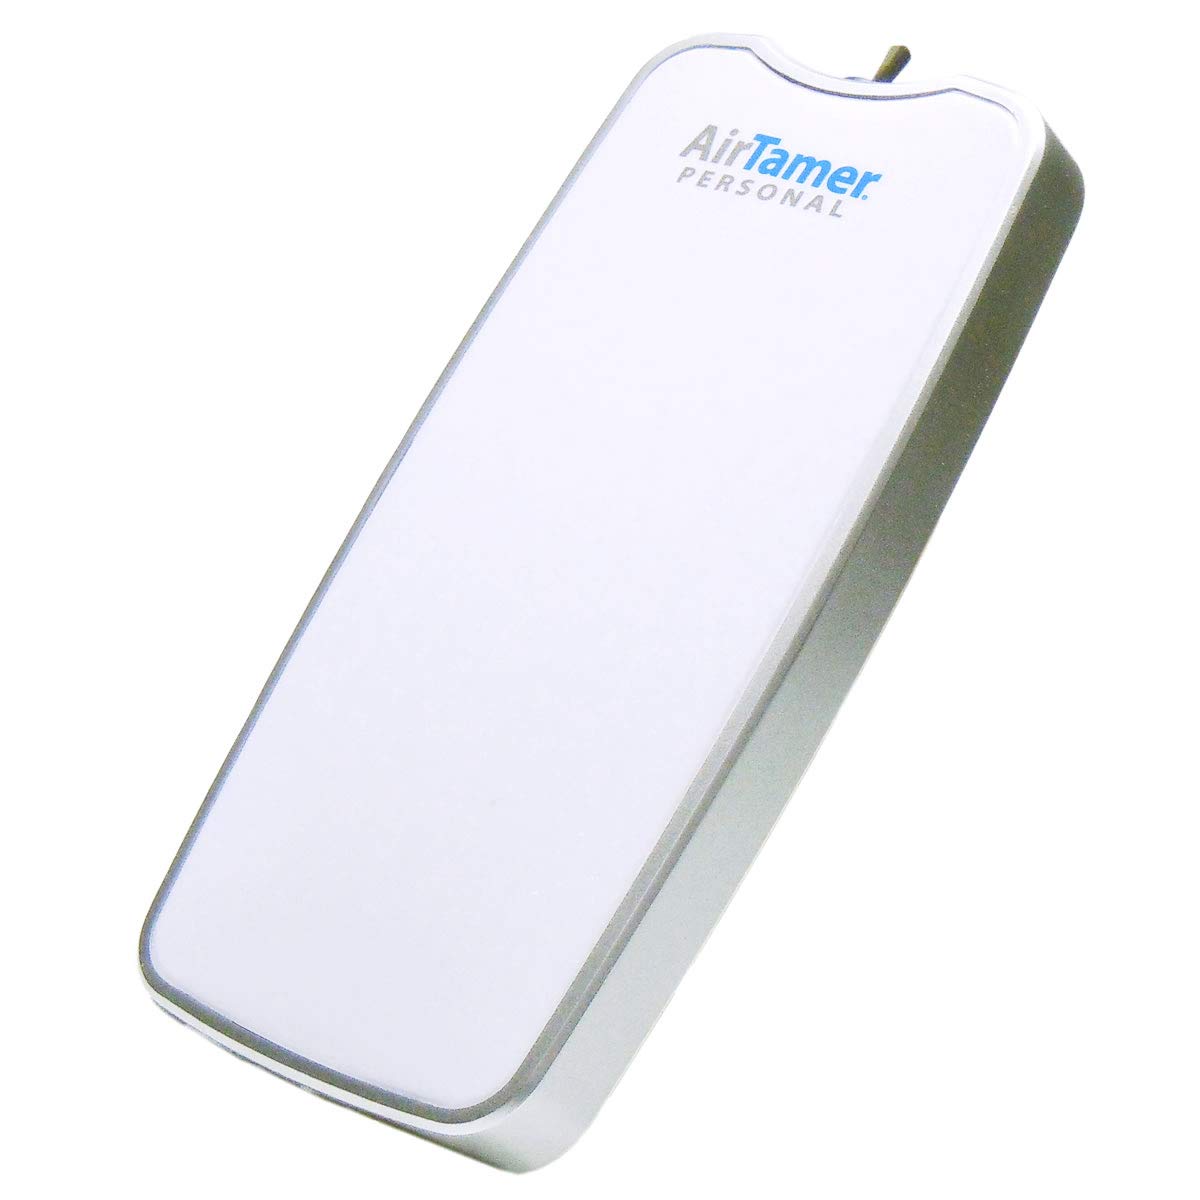 タバコの煙花粉対策に USB 携帯用 首掛け式 空気清浄機 イオン発生器 エアー テイマー